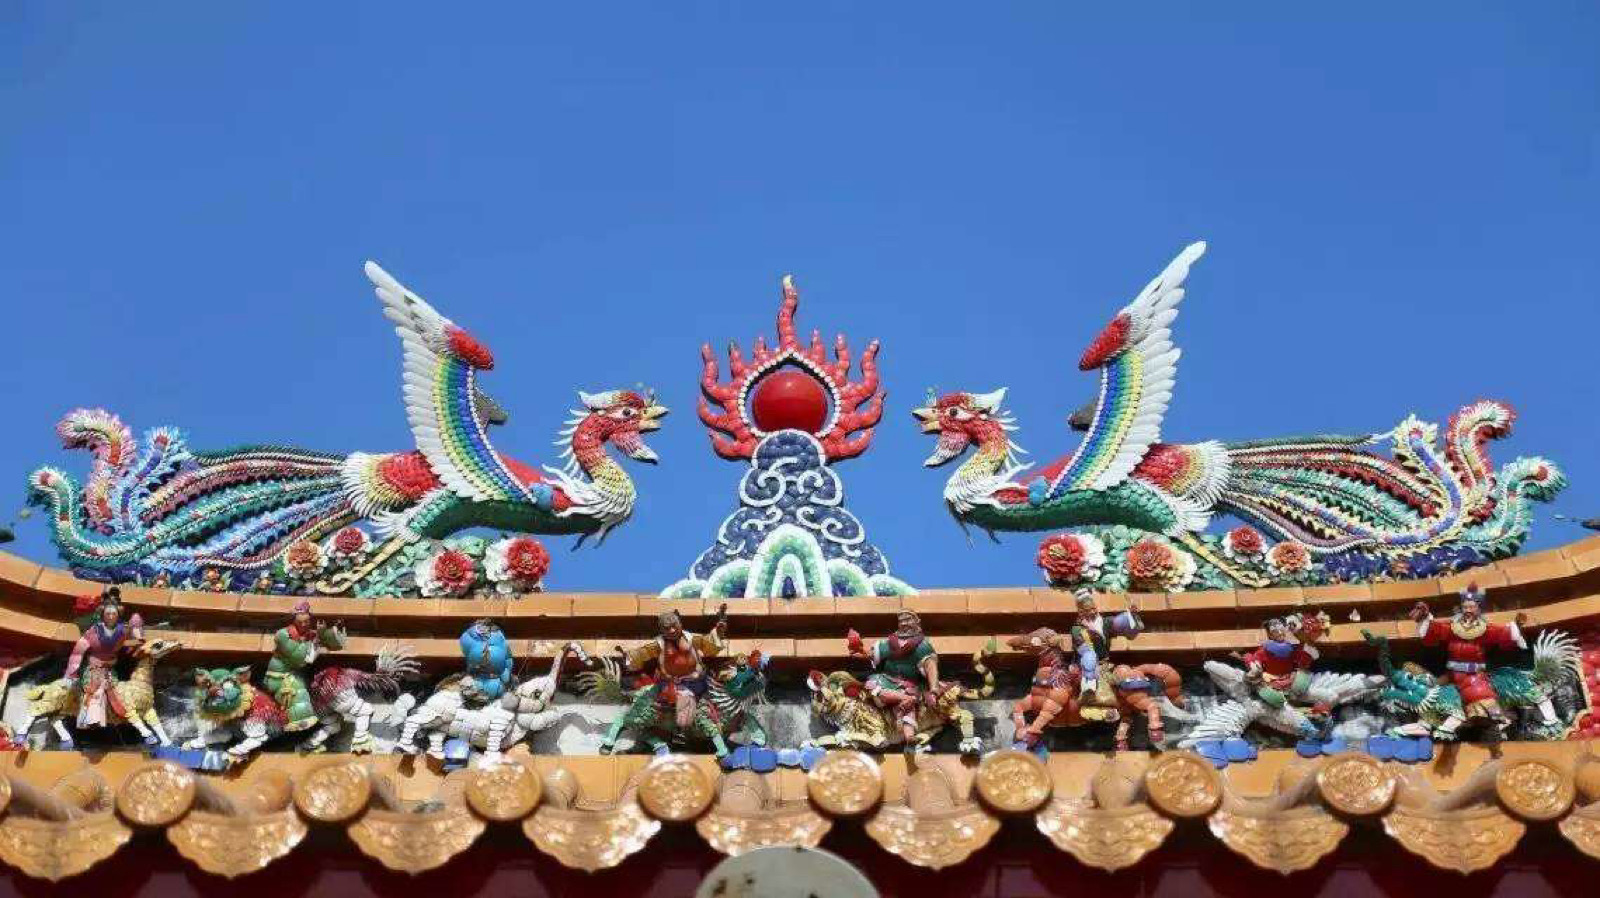 潮州嵌瓷,俗称"贴饶"或"扣饶",是广东潮汕地区的三大传统建筑装饰艺术